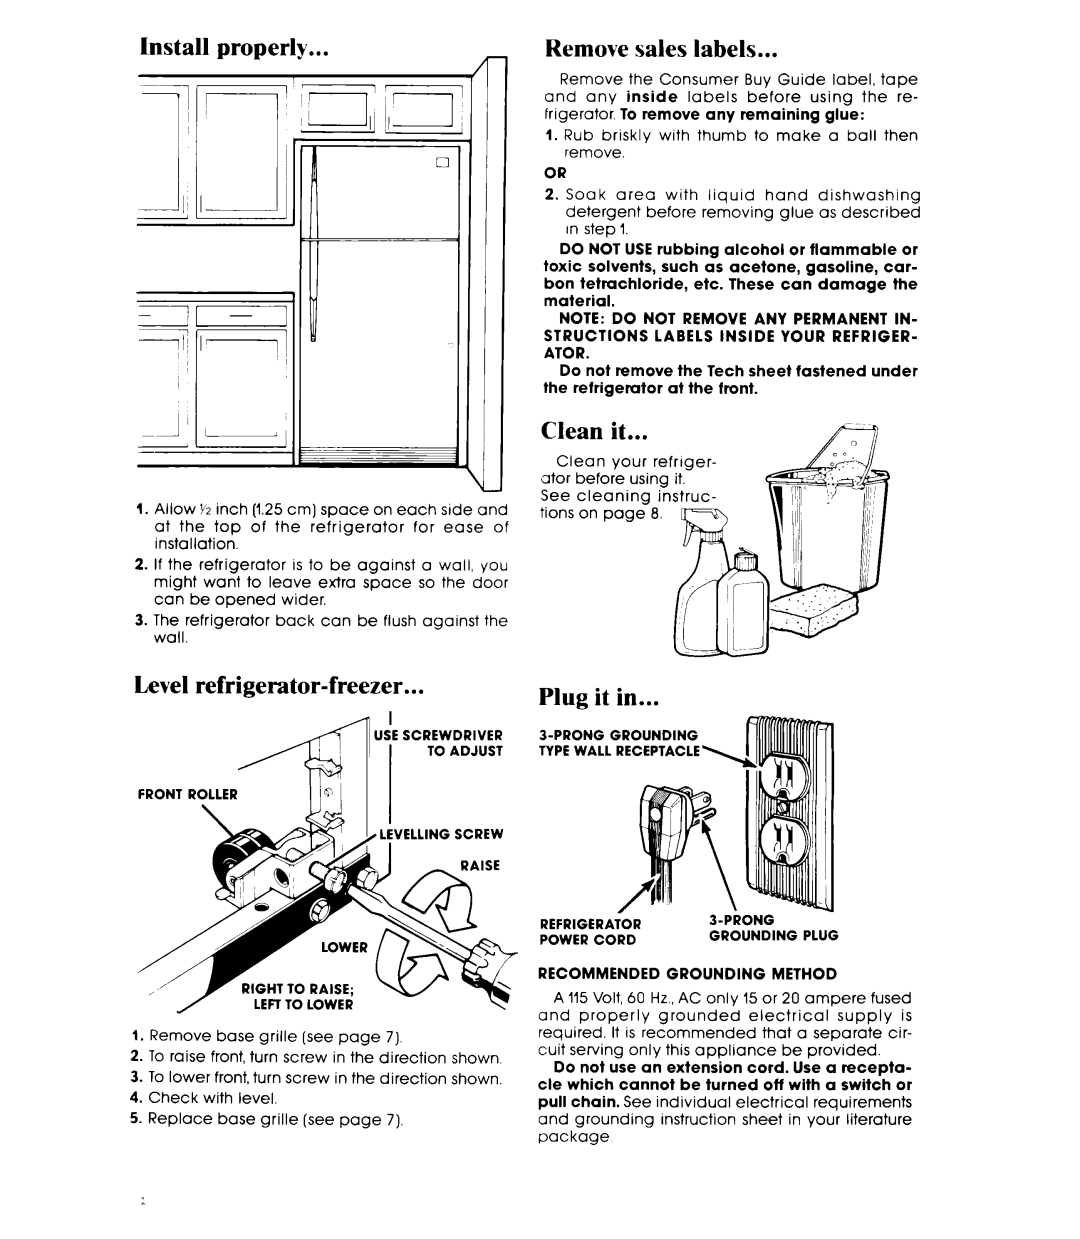 Whirlpool ET20AK manual tnstall properly, Remove sales labels, Level refrigerator-freezer, Plug it in, Clean, l i~il, jj,l 